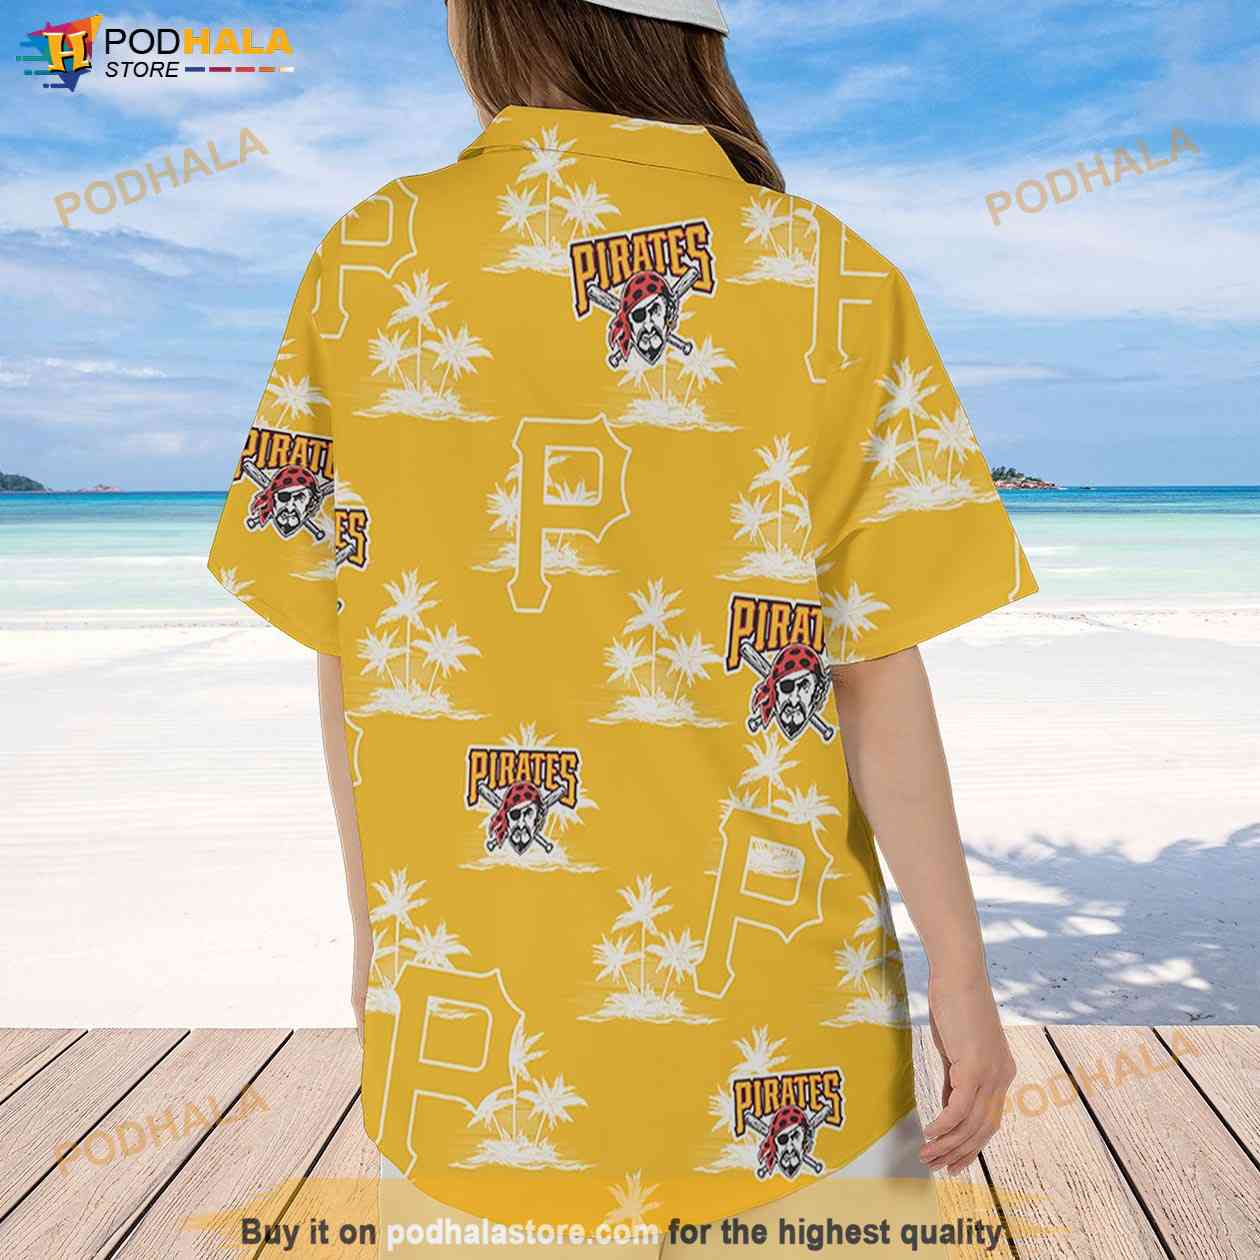 LIMITED] Pittsburgh Pirates MLB-Summer Hawaiian Shirt And